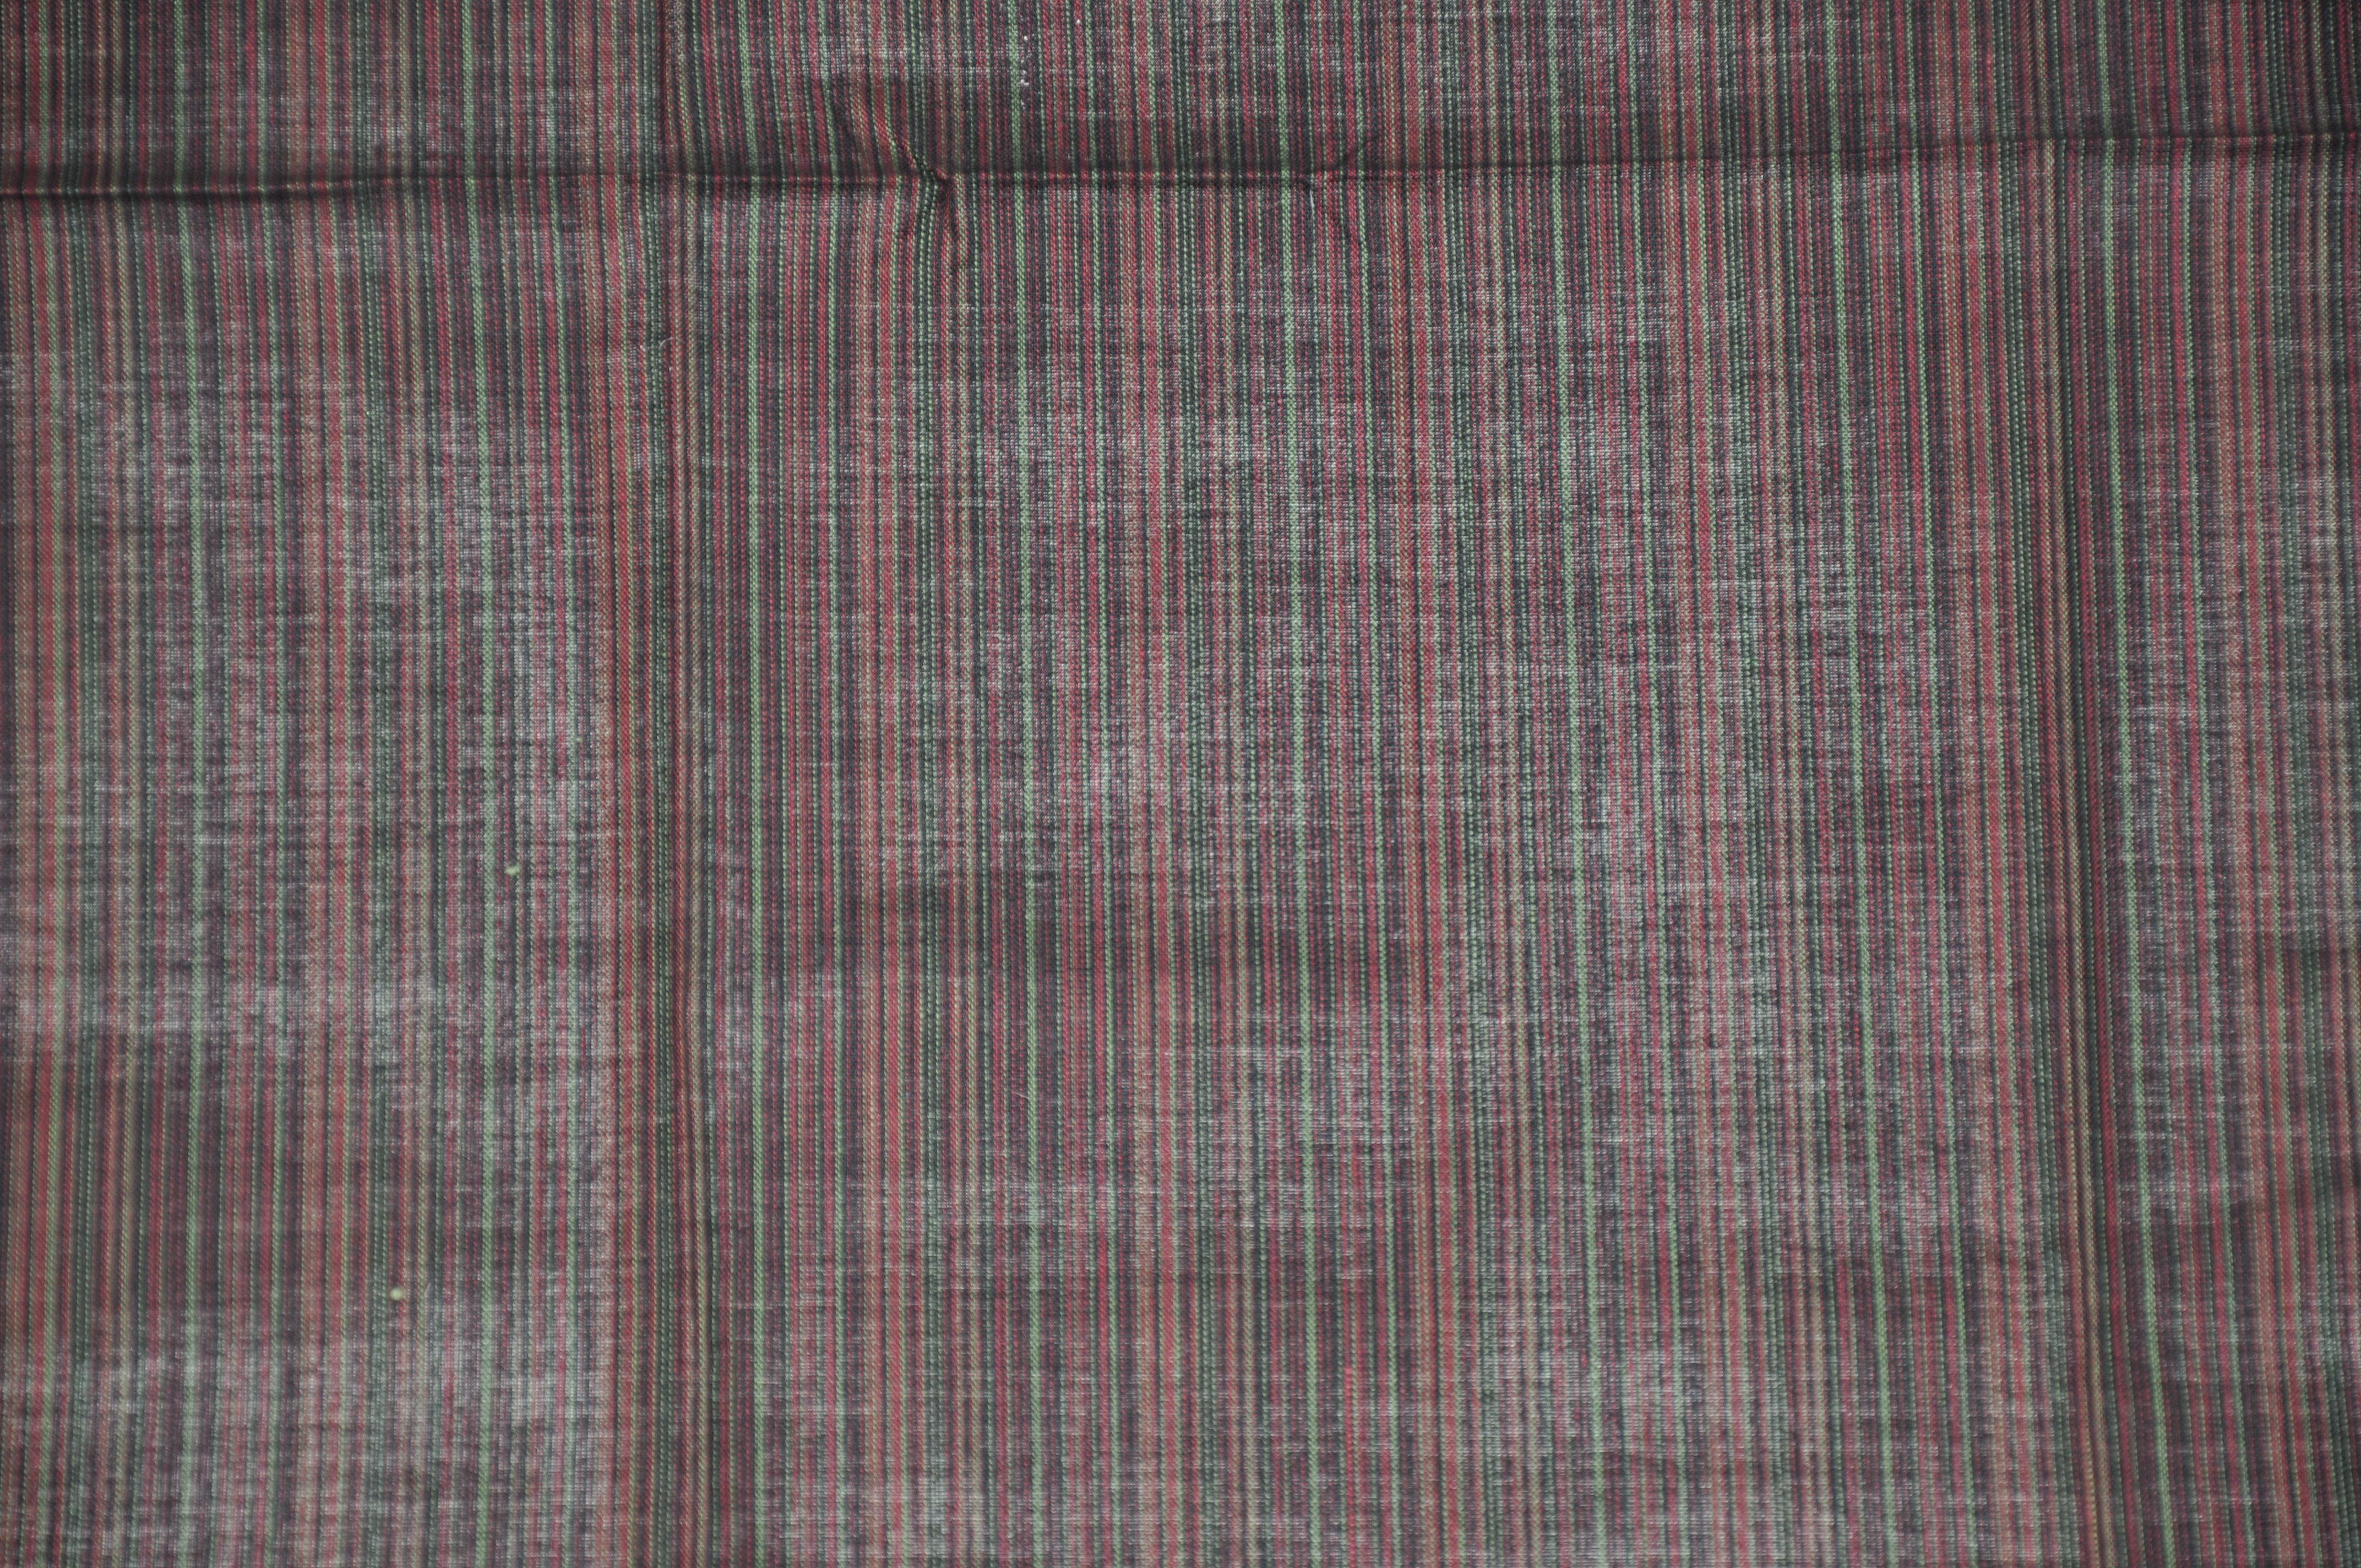        Christian Aujard elegantes Mikrostreifen-Taschentuch aus Baumwolle/Leinen mit abgesteppten Rändern und den Maßen 18 cm x 18 cm. Hergestellt in Frankreich.